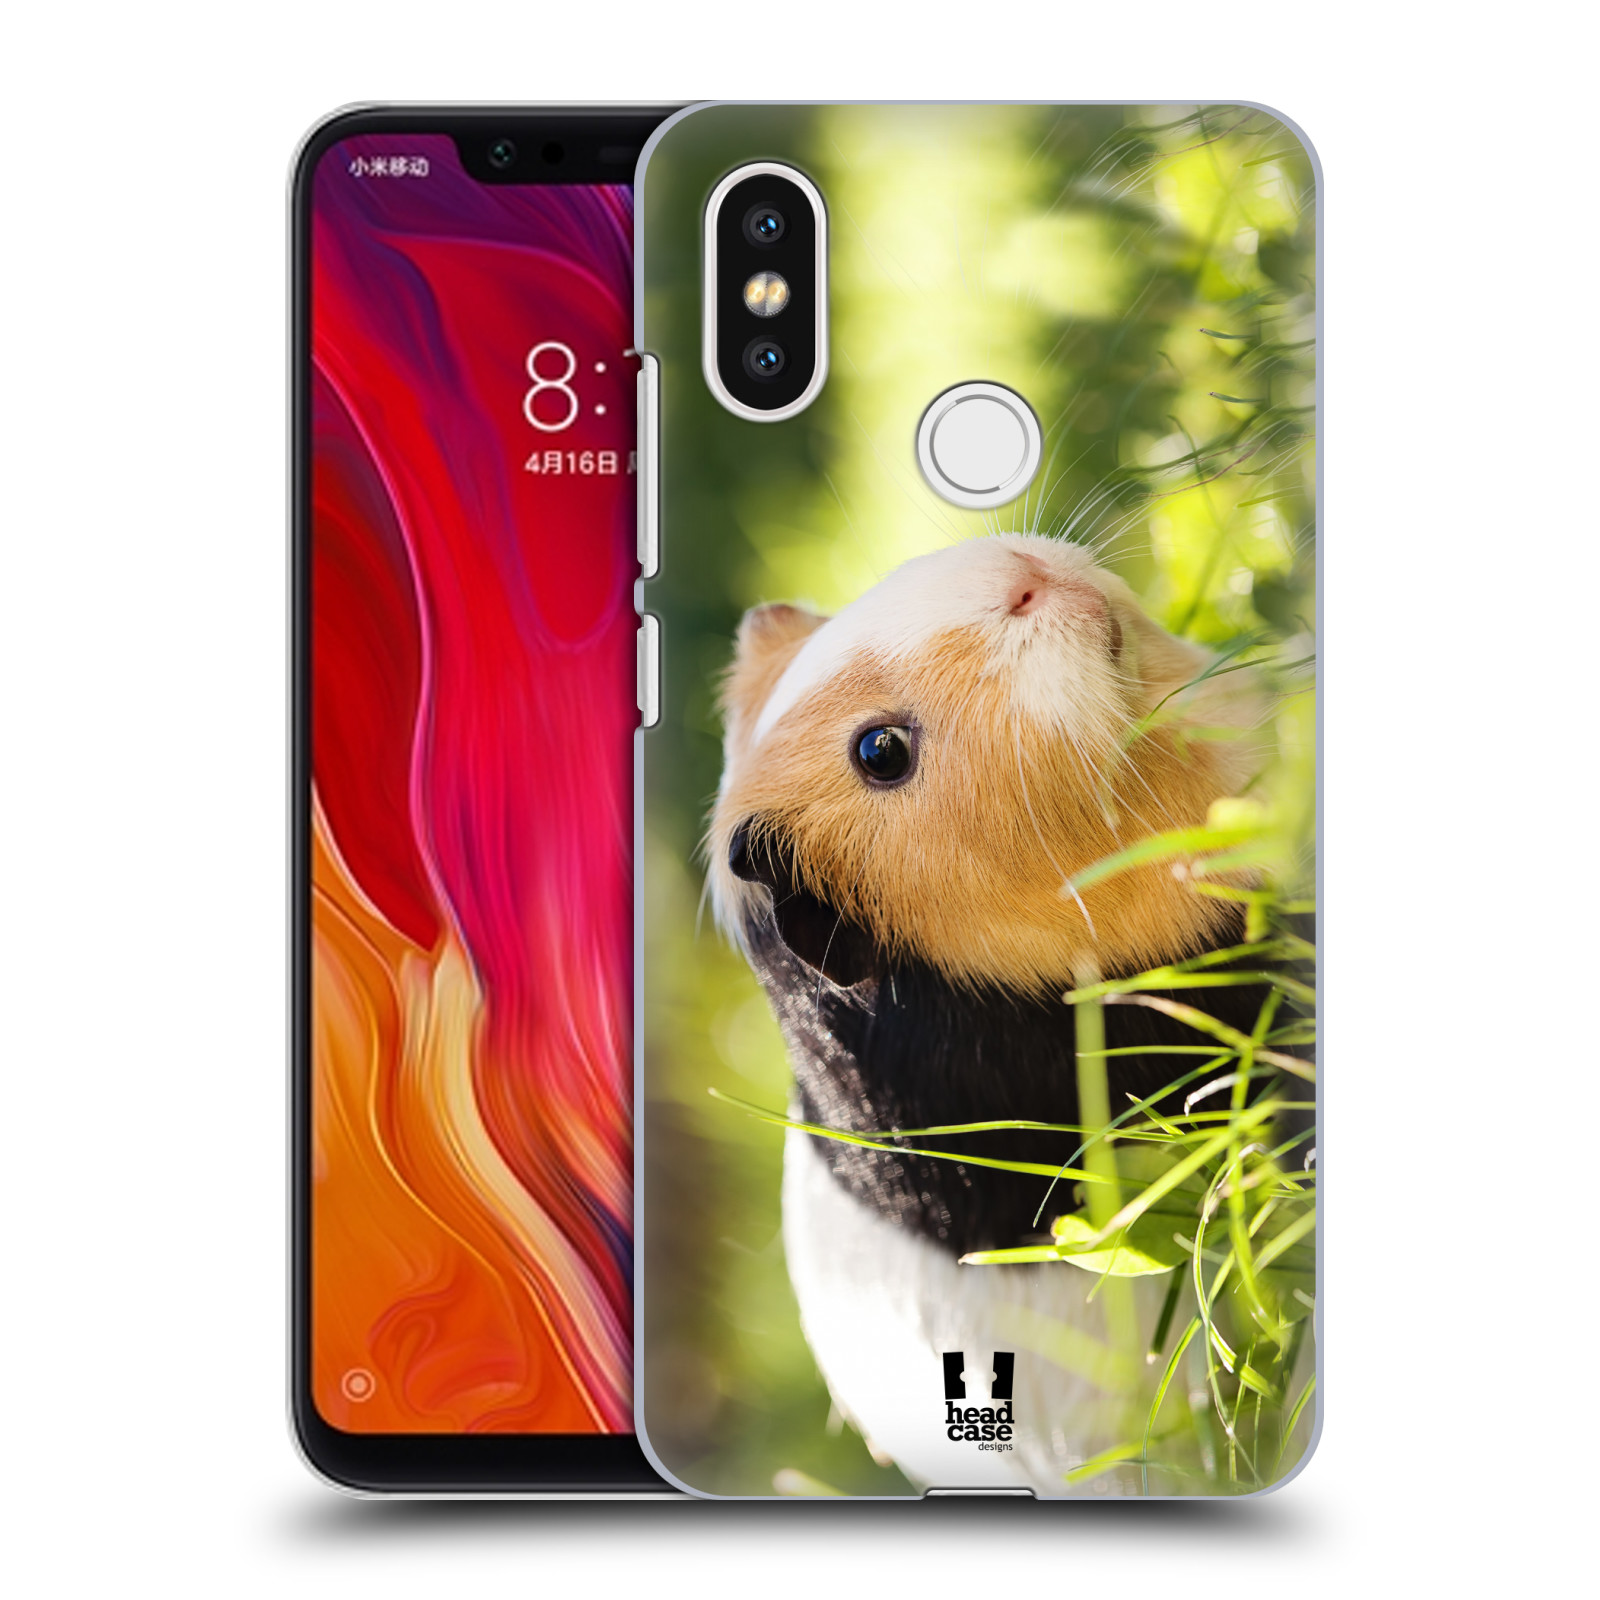 HEAD CASE plastový obal na mobil Xiaomi Mi 8 vzor slavná zvířata foto morče